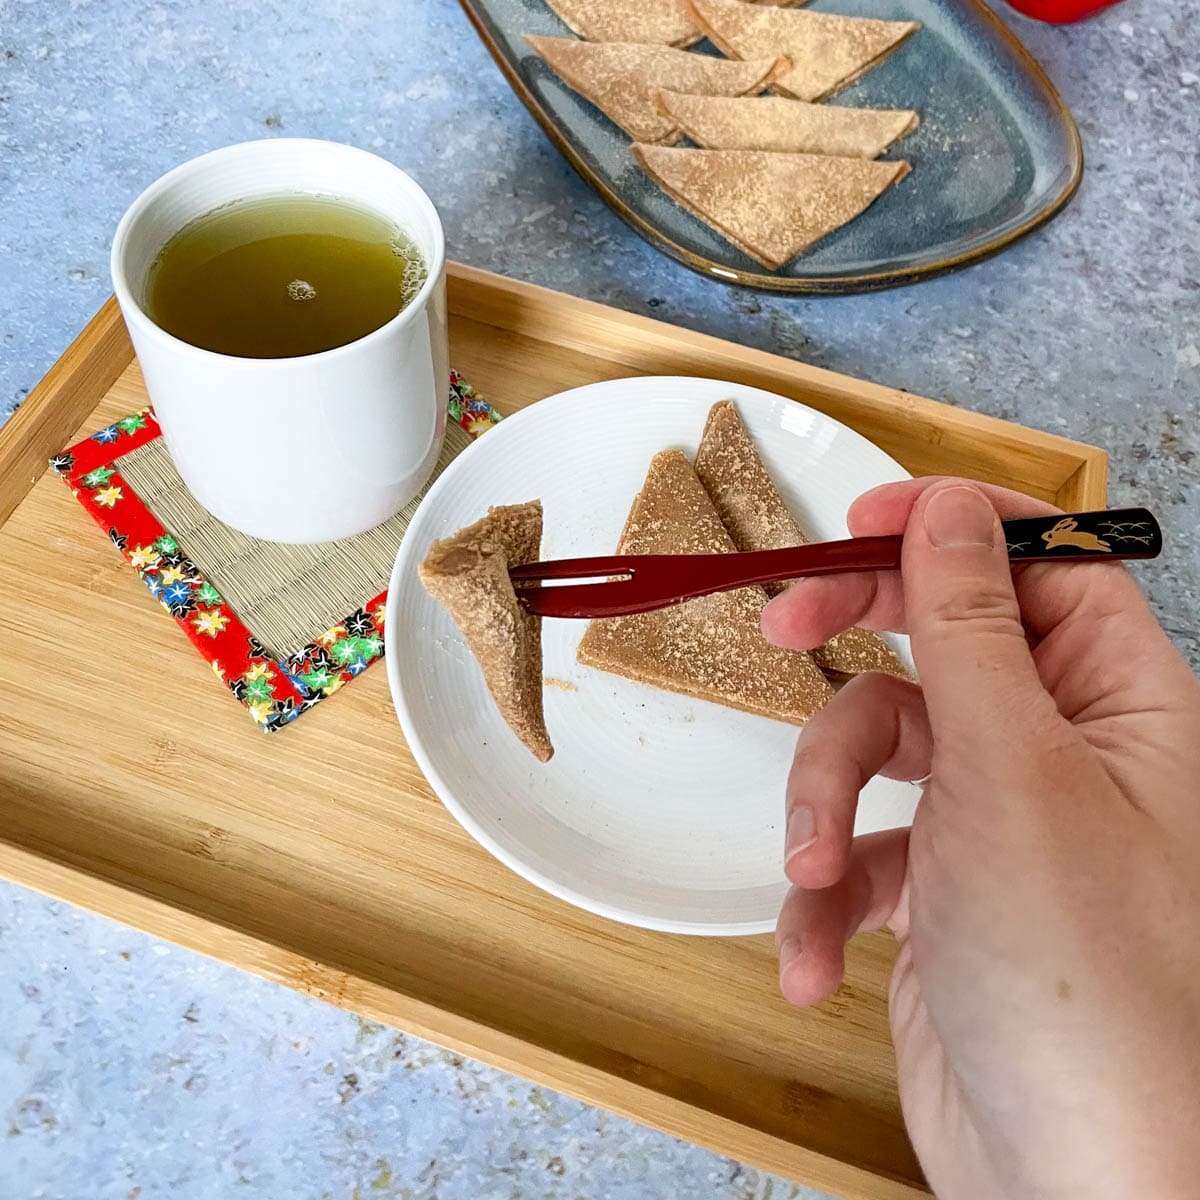 Yatsuhashi auf Holzatablet und mit japanischer Wagashi-Gabel. Dazu ein grüner Tee